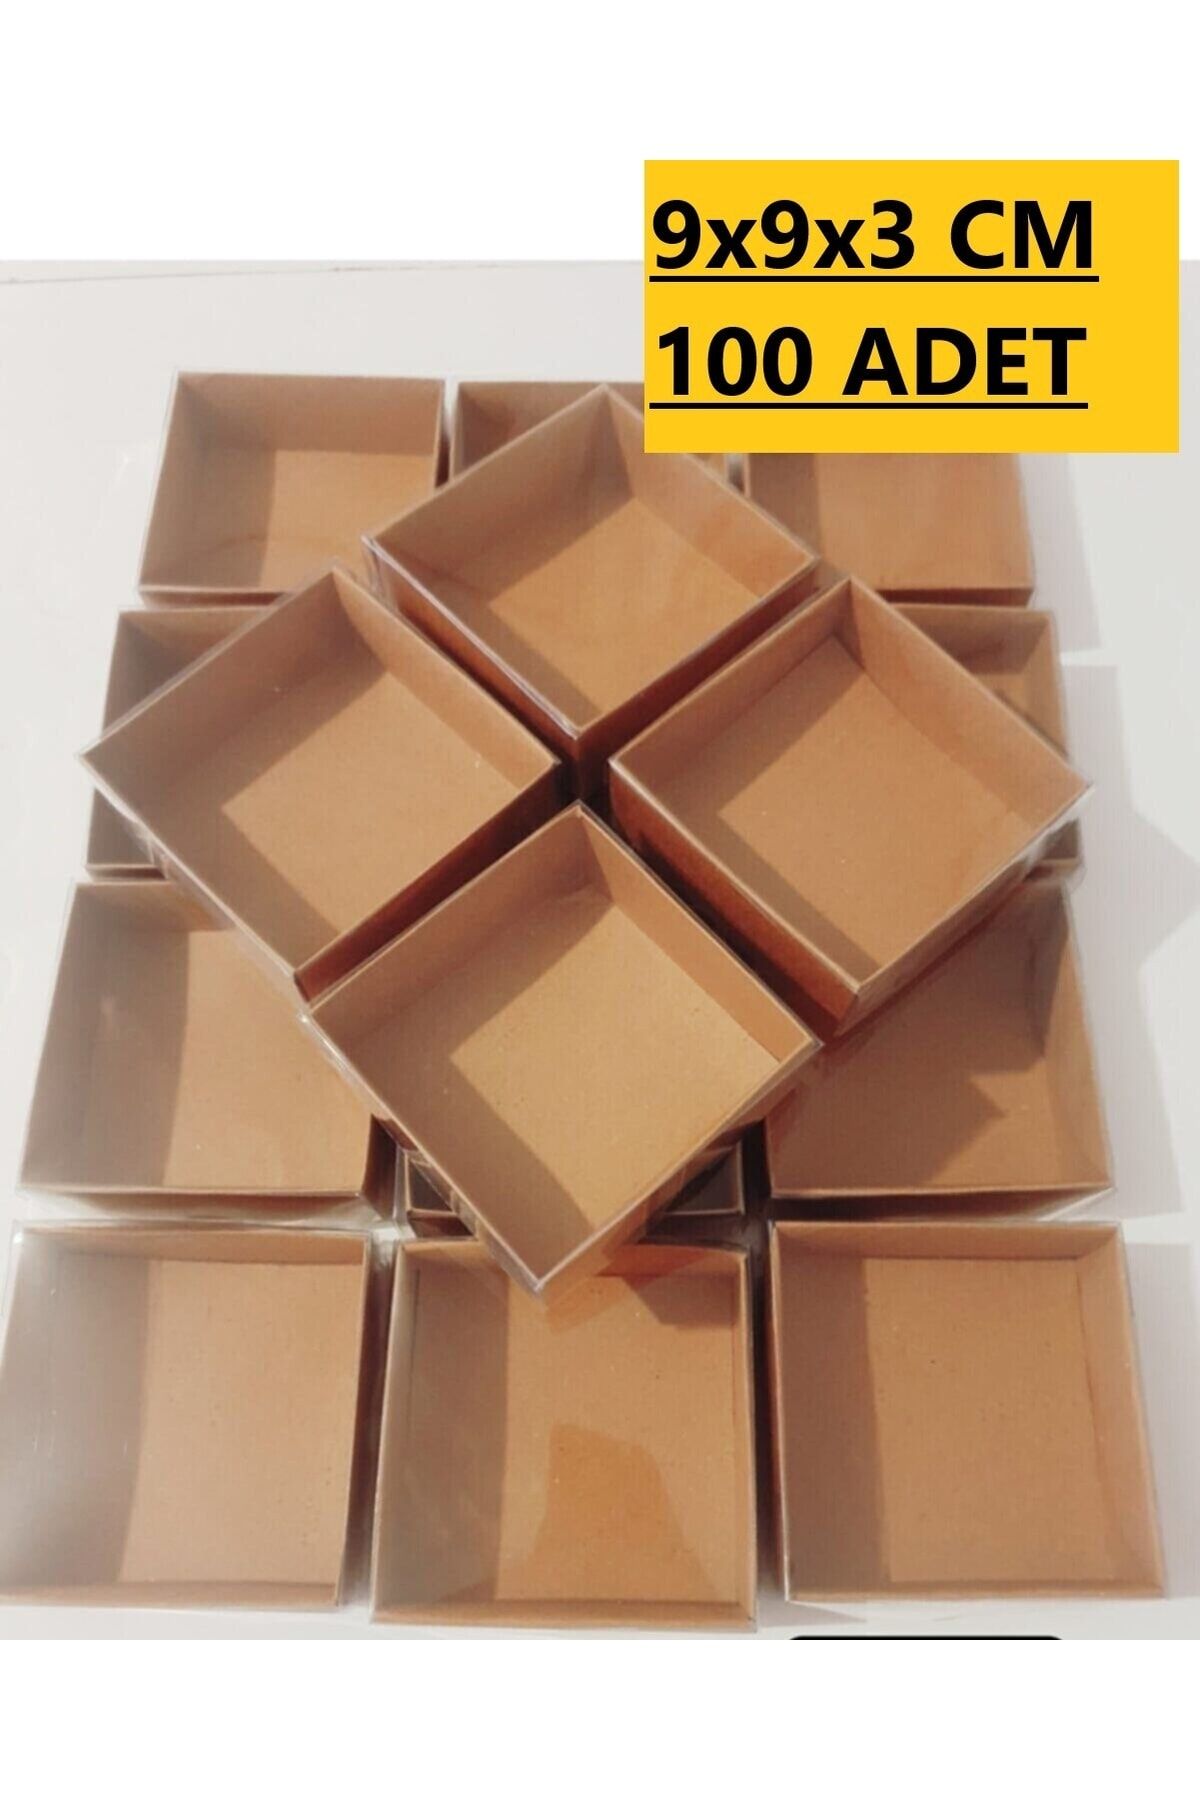 Modern Box 100 Adet 9x9x3 Cm Asetat Kapaklı Kraft Kutu Düğün Nişan Kına Hediyelik Kutu